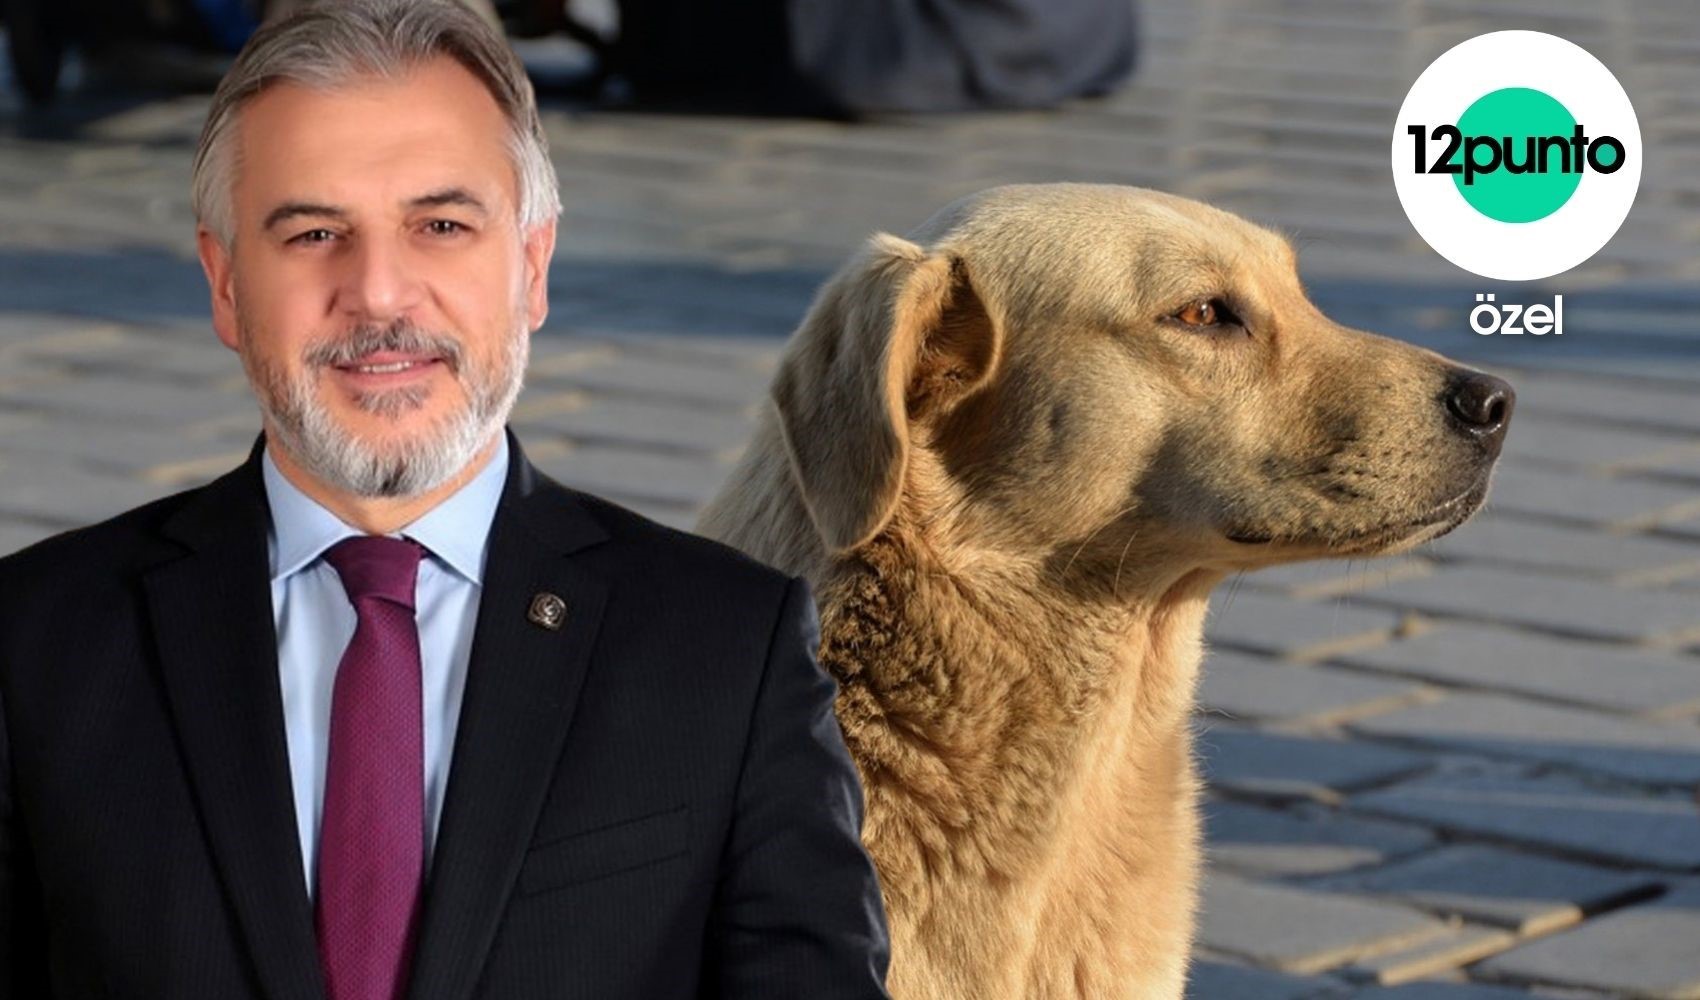 Sokaklarda yaşayan köpeklere ötenazi uygulanacak mı? Yeniden Refah Partisi Genel Başkan Yardımcısı Mehmet Altınöz, 12punto'nun sorularını yanıtladı